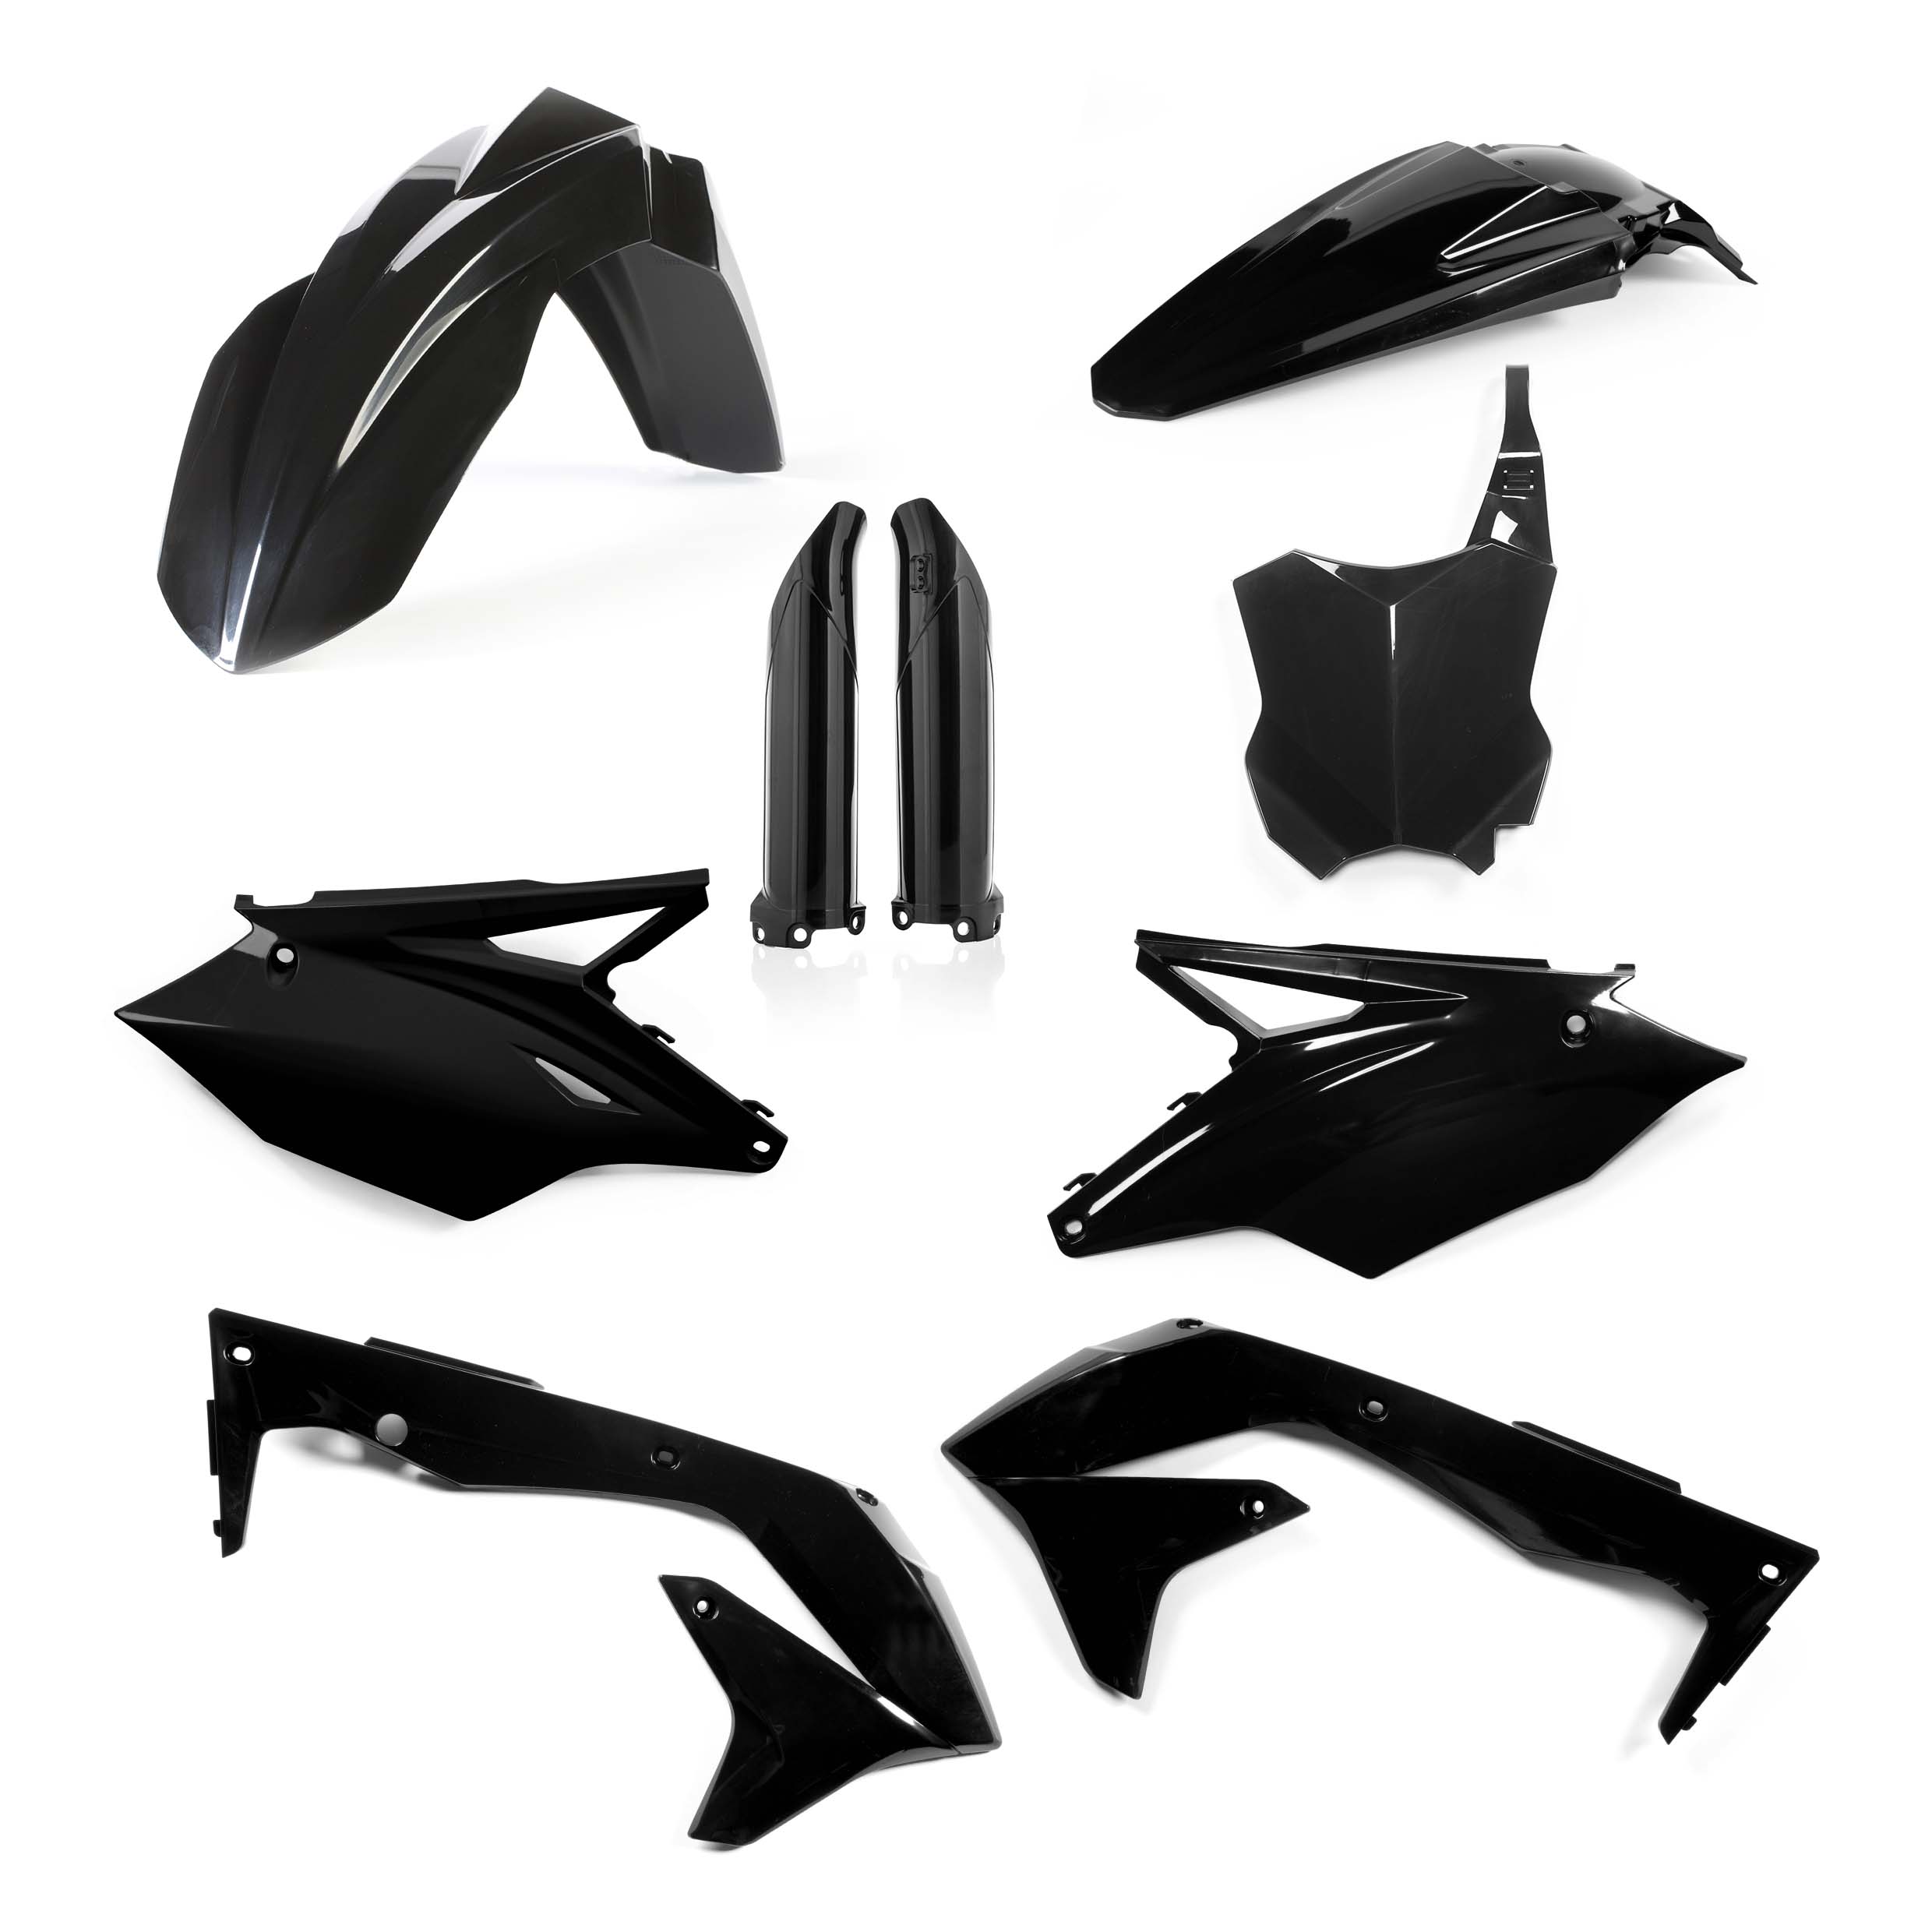 Plastikteile für deine Kawasaki KX 450 in schwarz bestehend aus Kotflügel vorn Kotflügel hinten Kühlerspoiler Seitenteile Gabelschützer Startnummerntafel